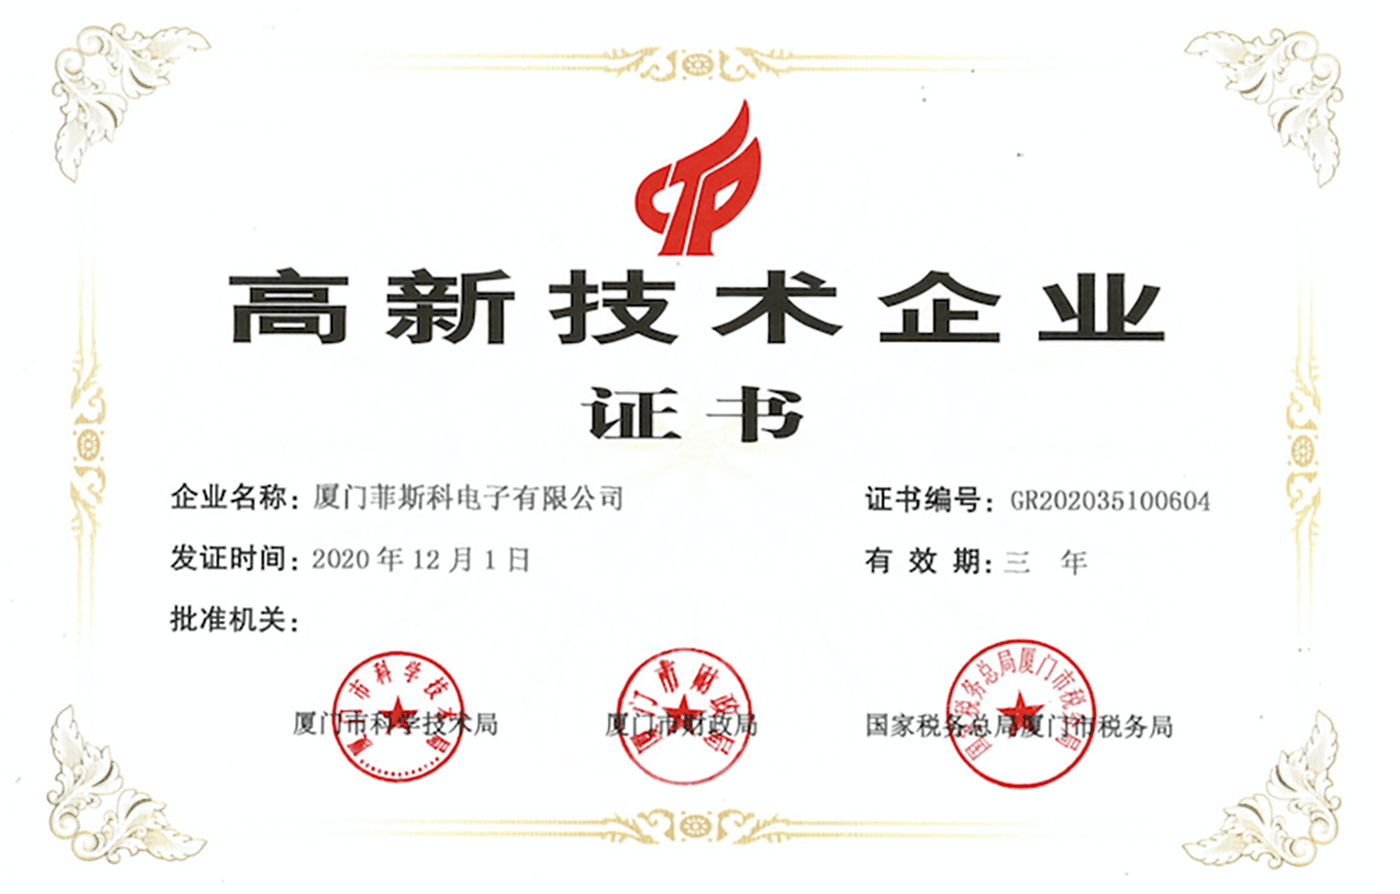 Сертифікат високотехнологічного enterprise.png